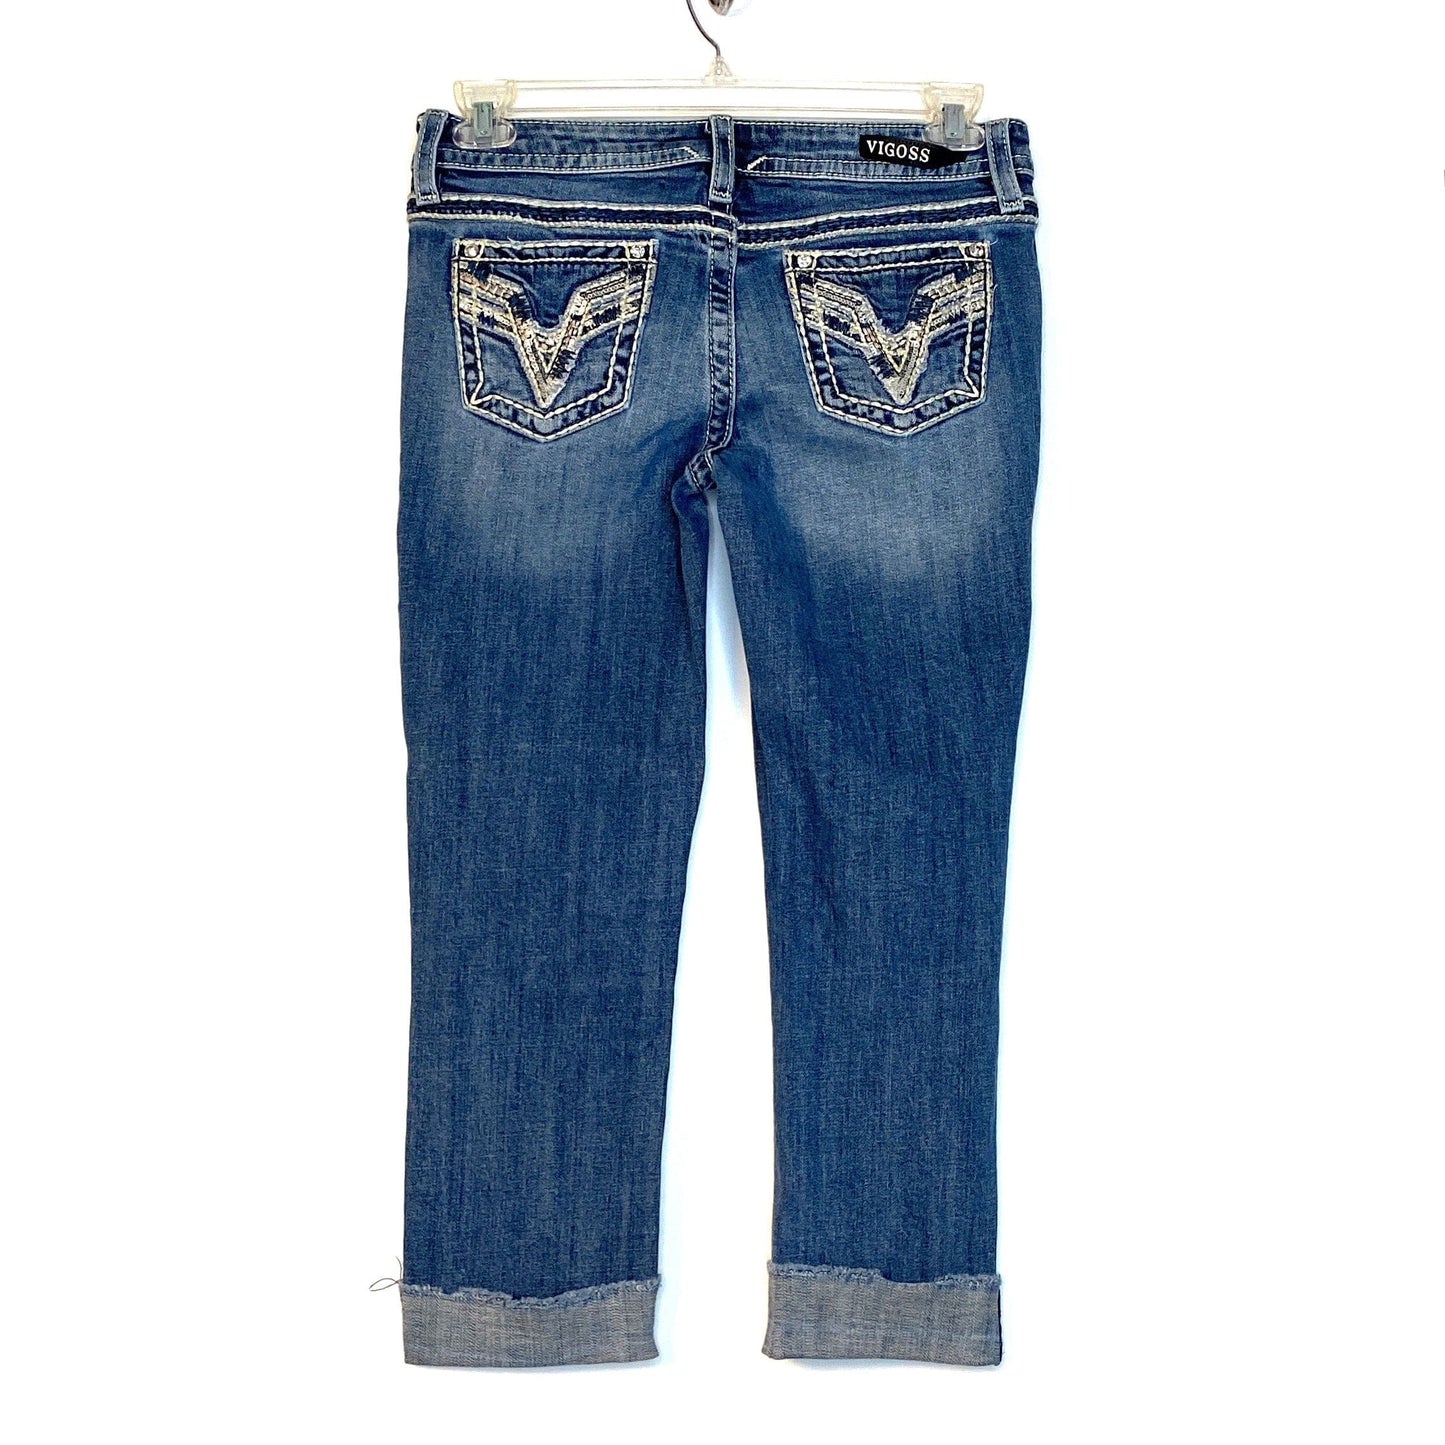 Vigoss Chelsea Womens Size 5/6 Capris Denim Blue Jeans Heritage Fit